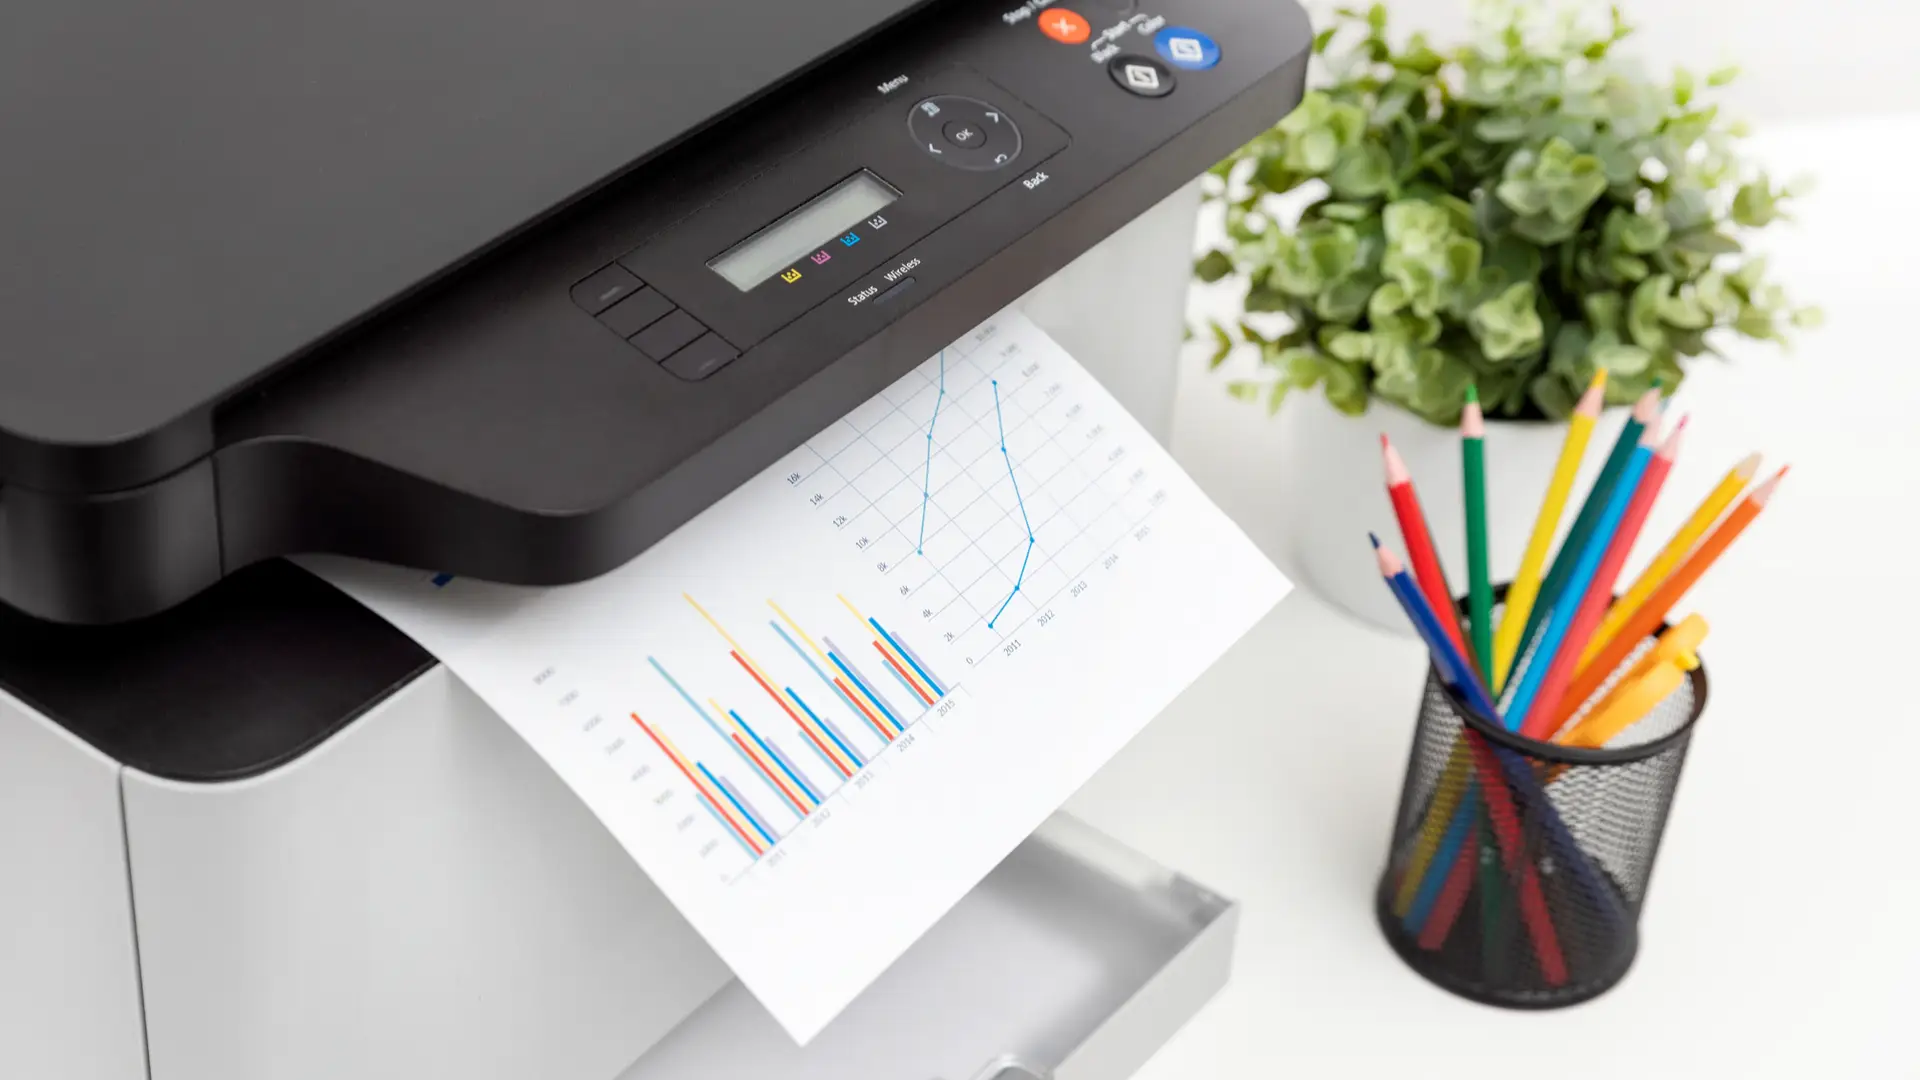  Impressora laser colorida em uma mesa de escritório